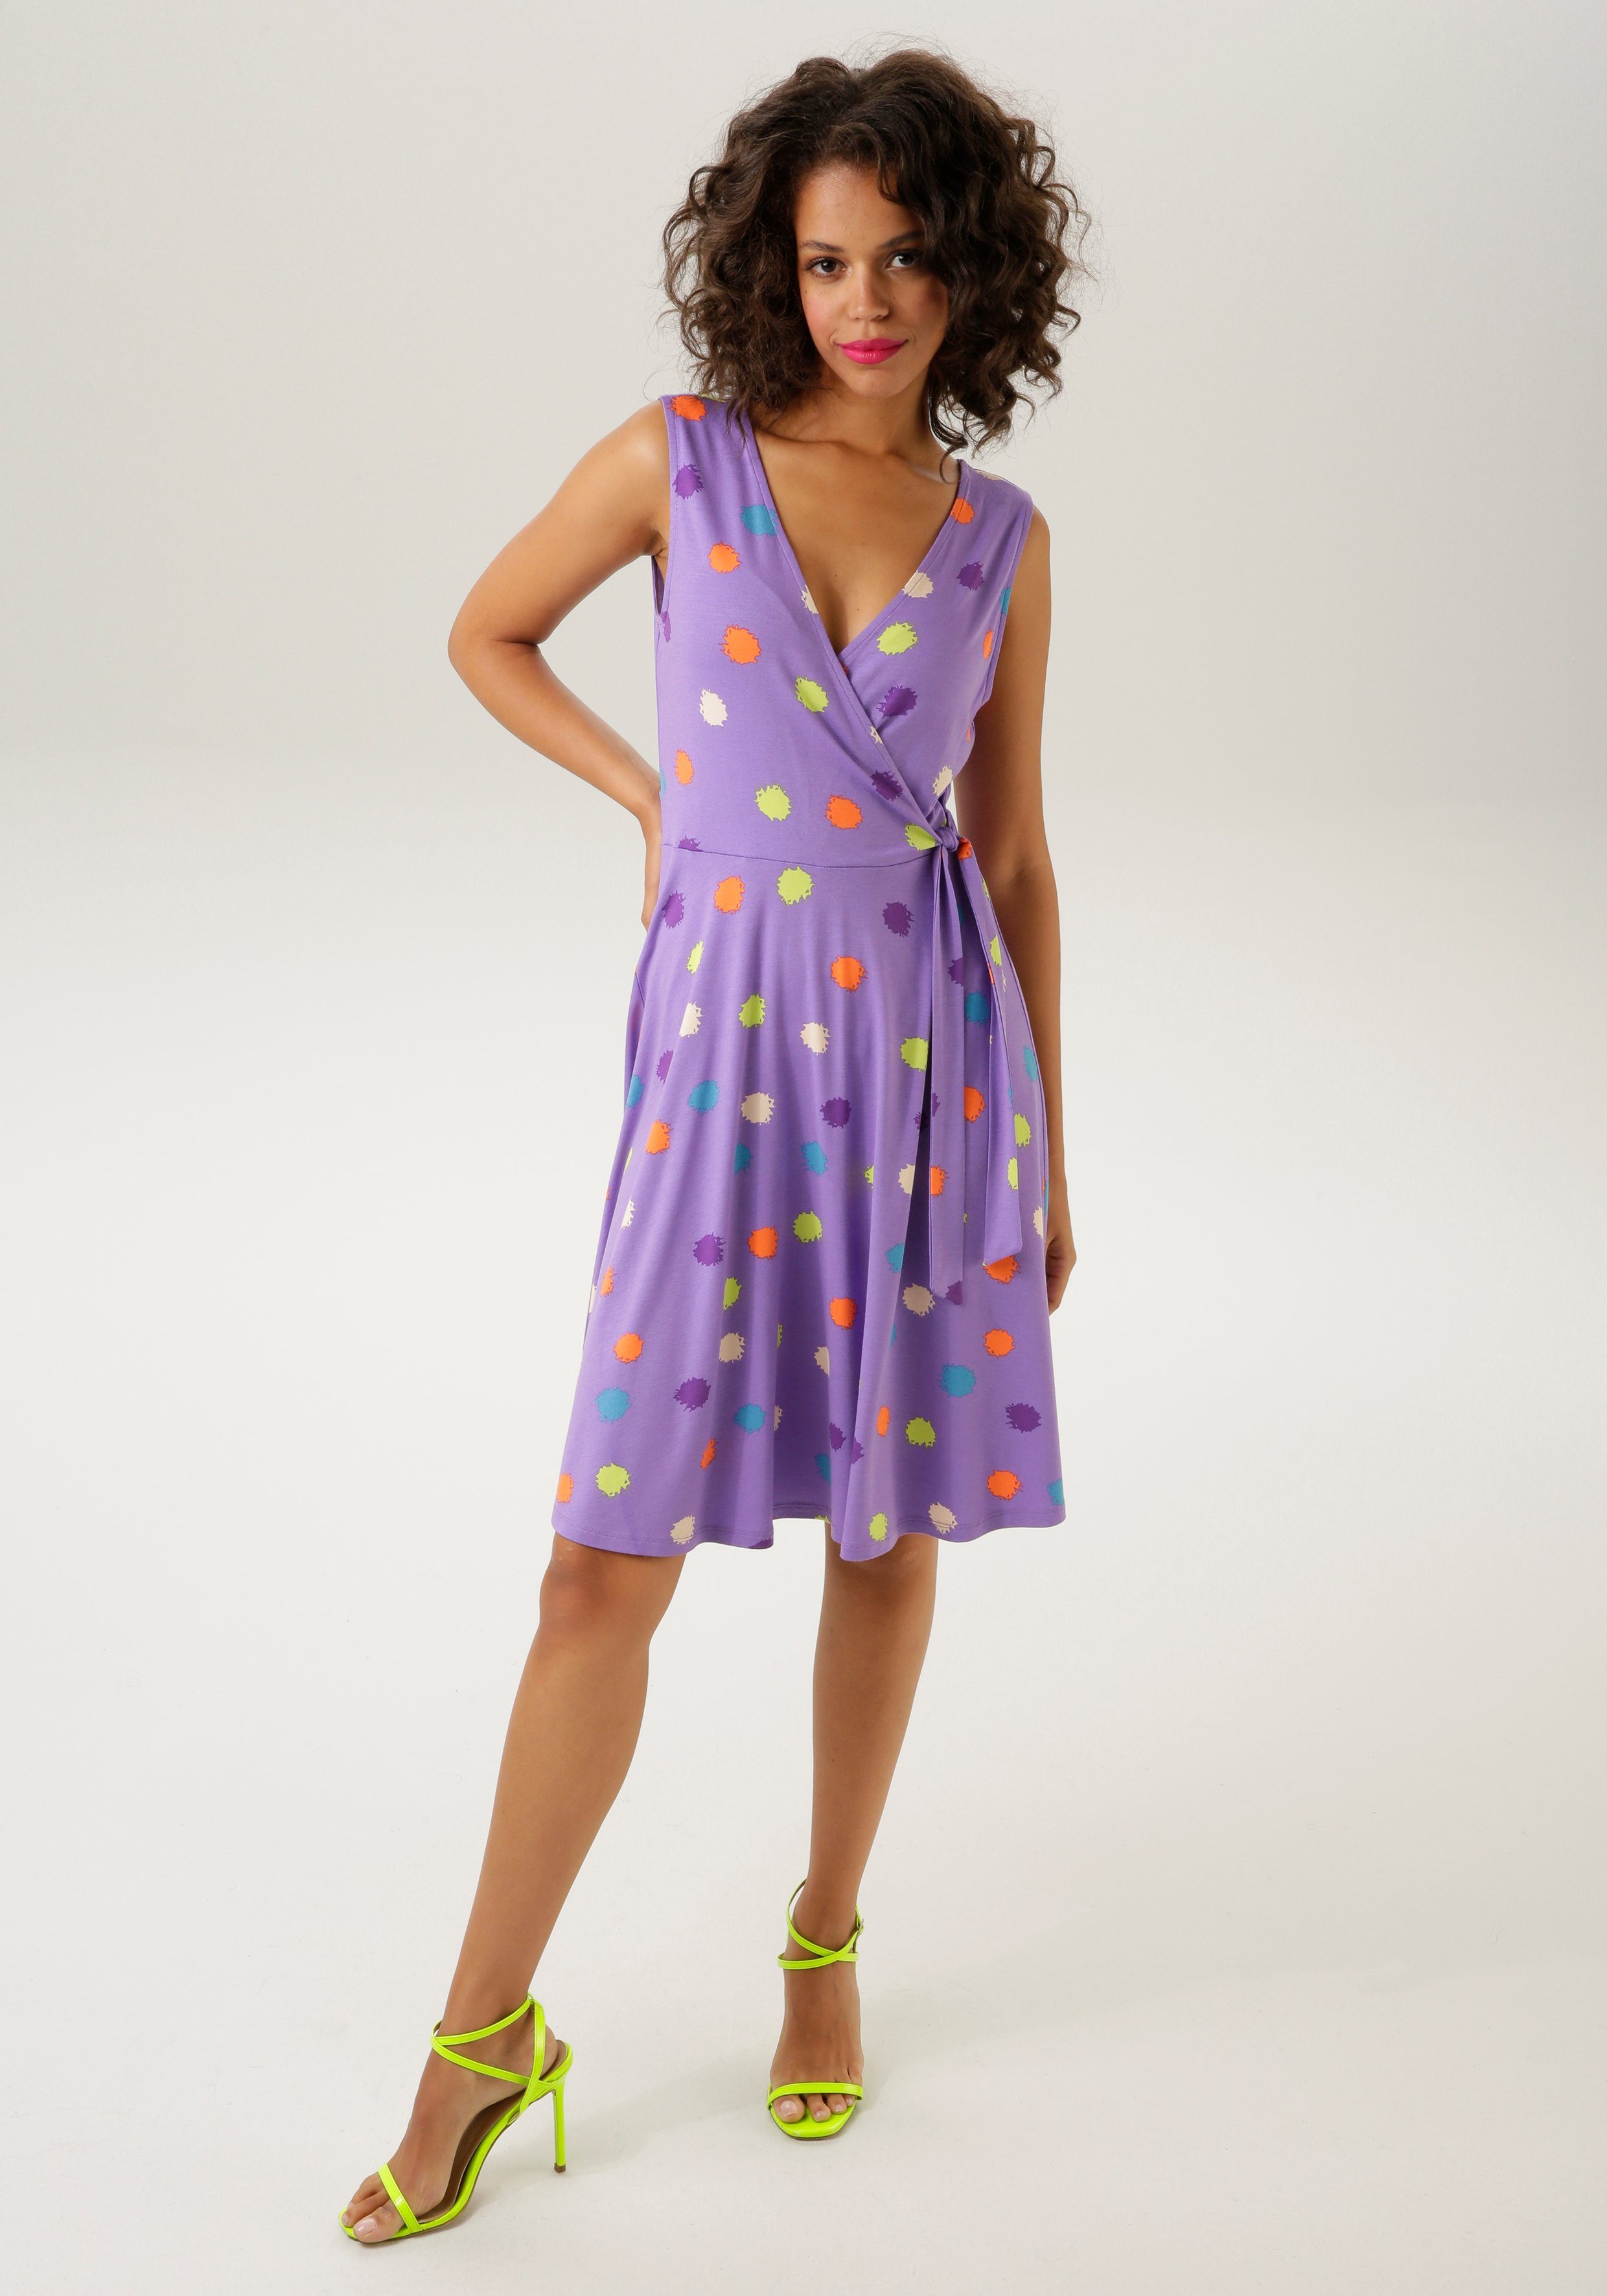 Sommerkleid - Unikat bunten CASUAL NEUE ein Teil bedruckt Aniston Klecksen - jedes KOLLEKTION mit